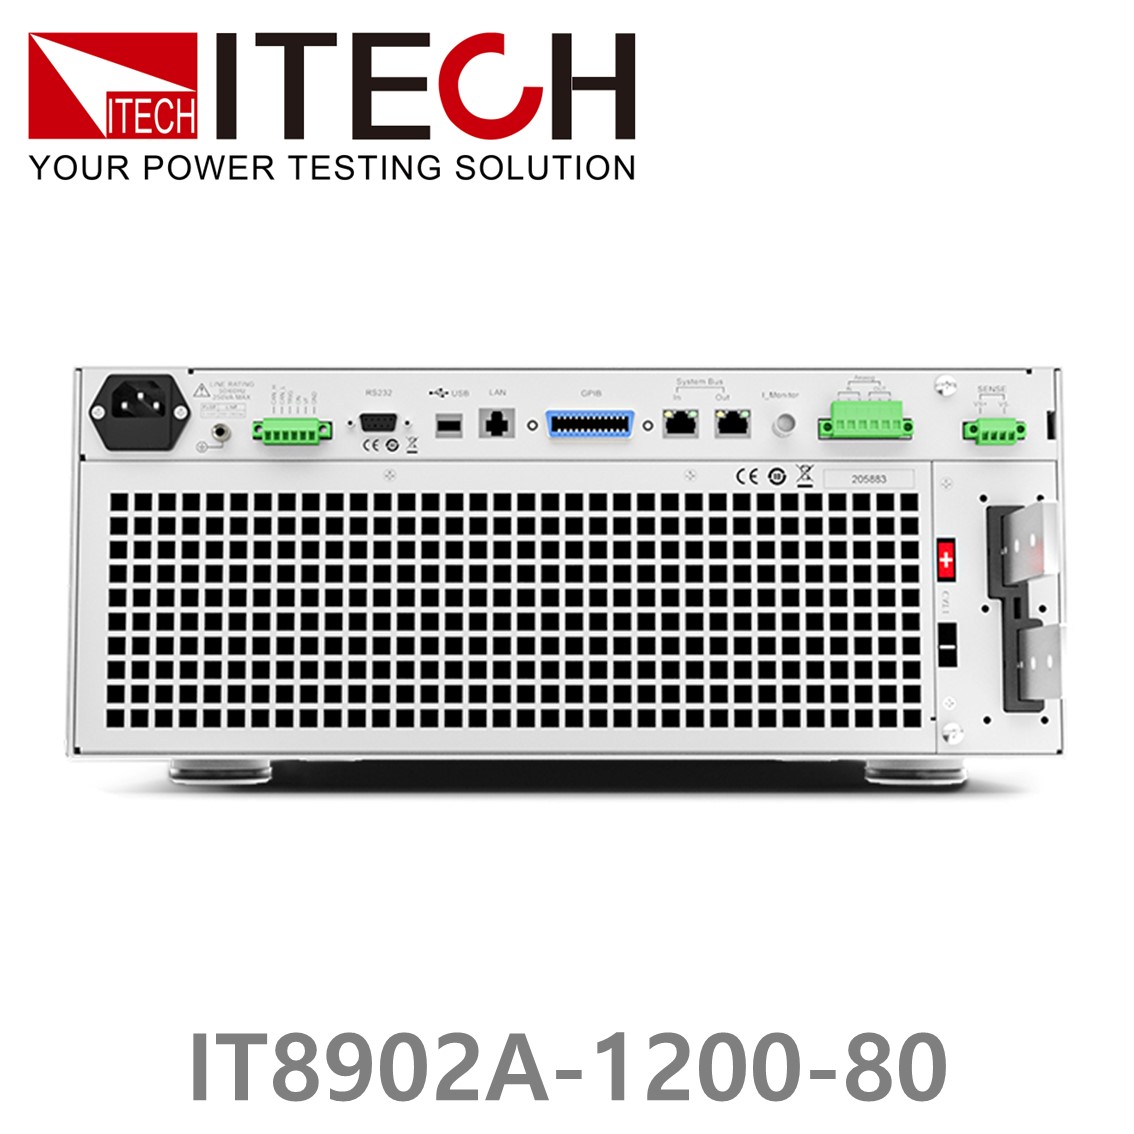 [ ITECH ] IT8902A-1200-80  고성능 고전력 DC 전자로드 1200V/80A/2kW (4U)